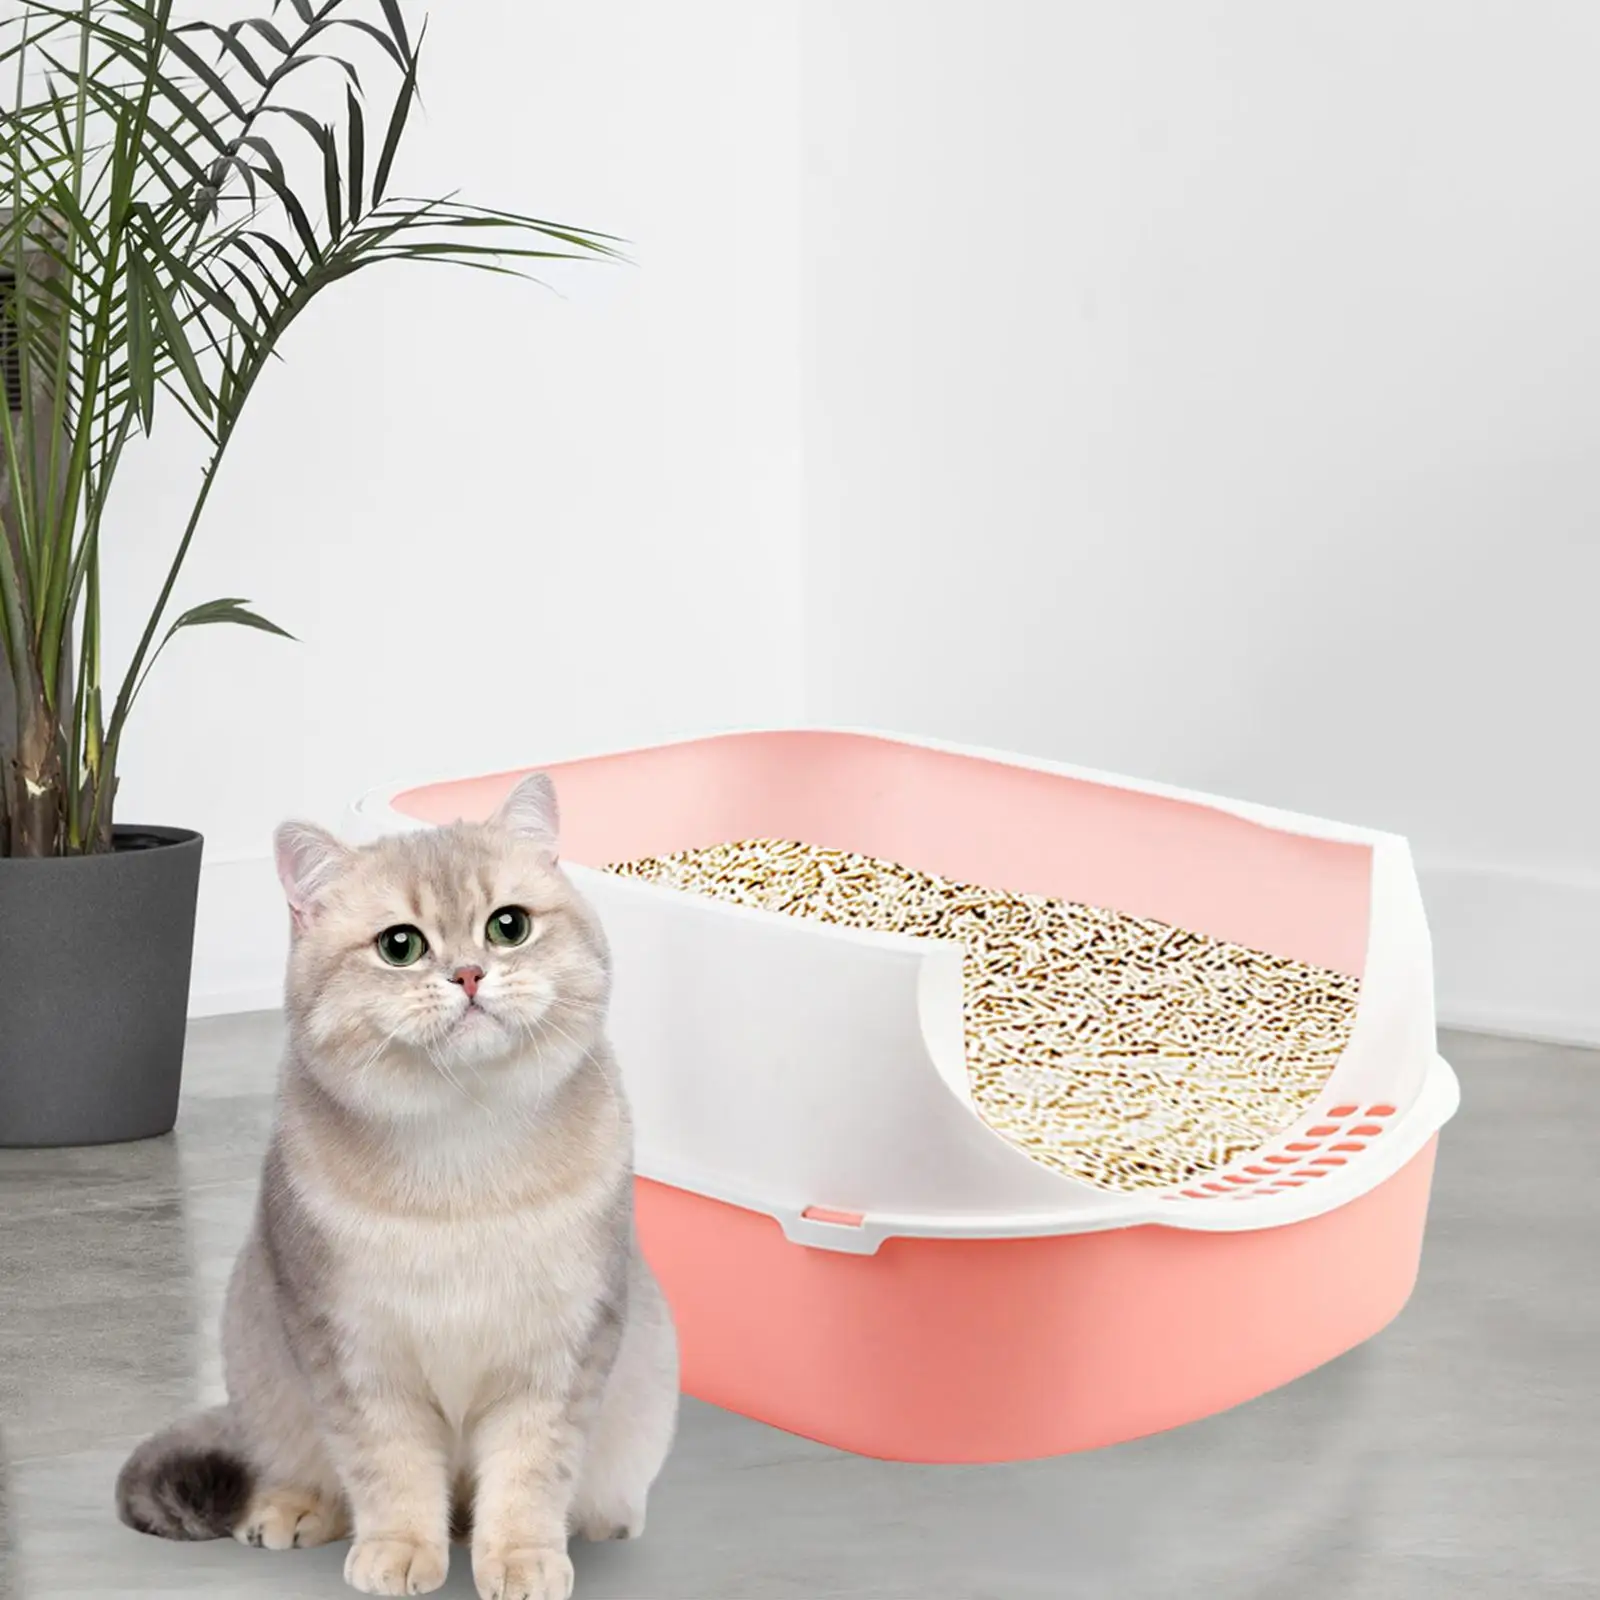 Cat Litter Box Semi Open Prevent Sand Leakage High Side Sifting Litter Box